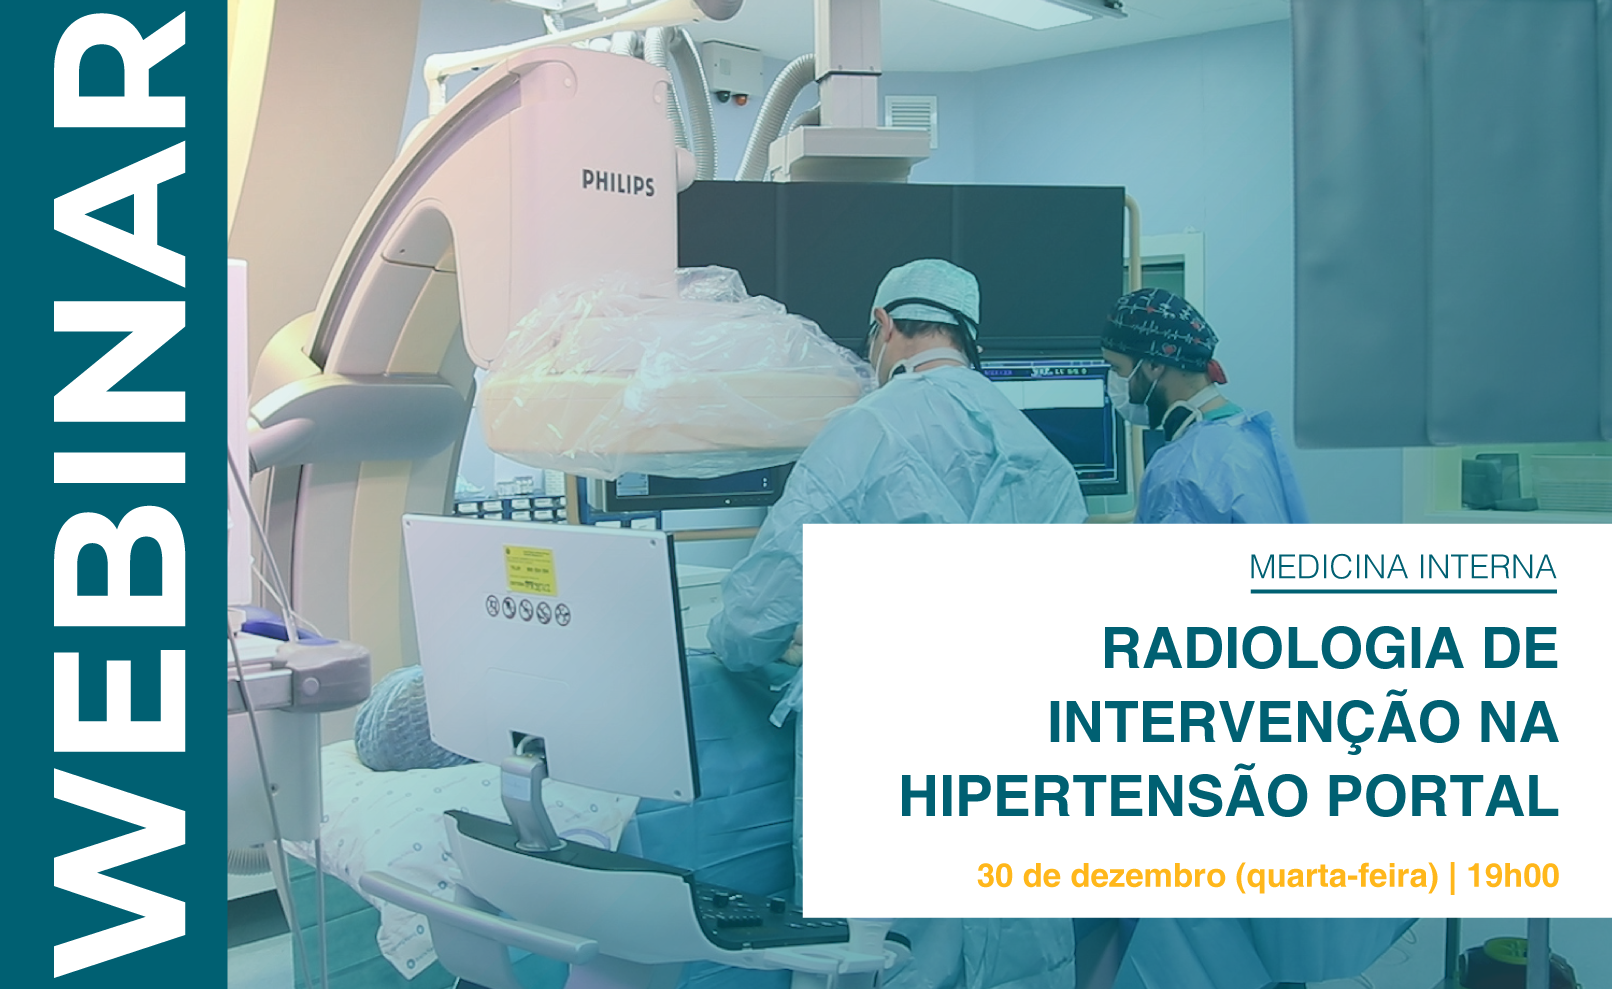 Radiologia de Intervenção na Hipertensão Portal